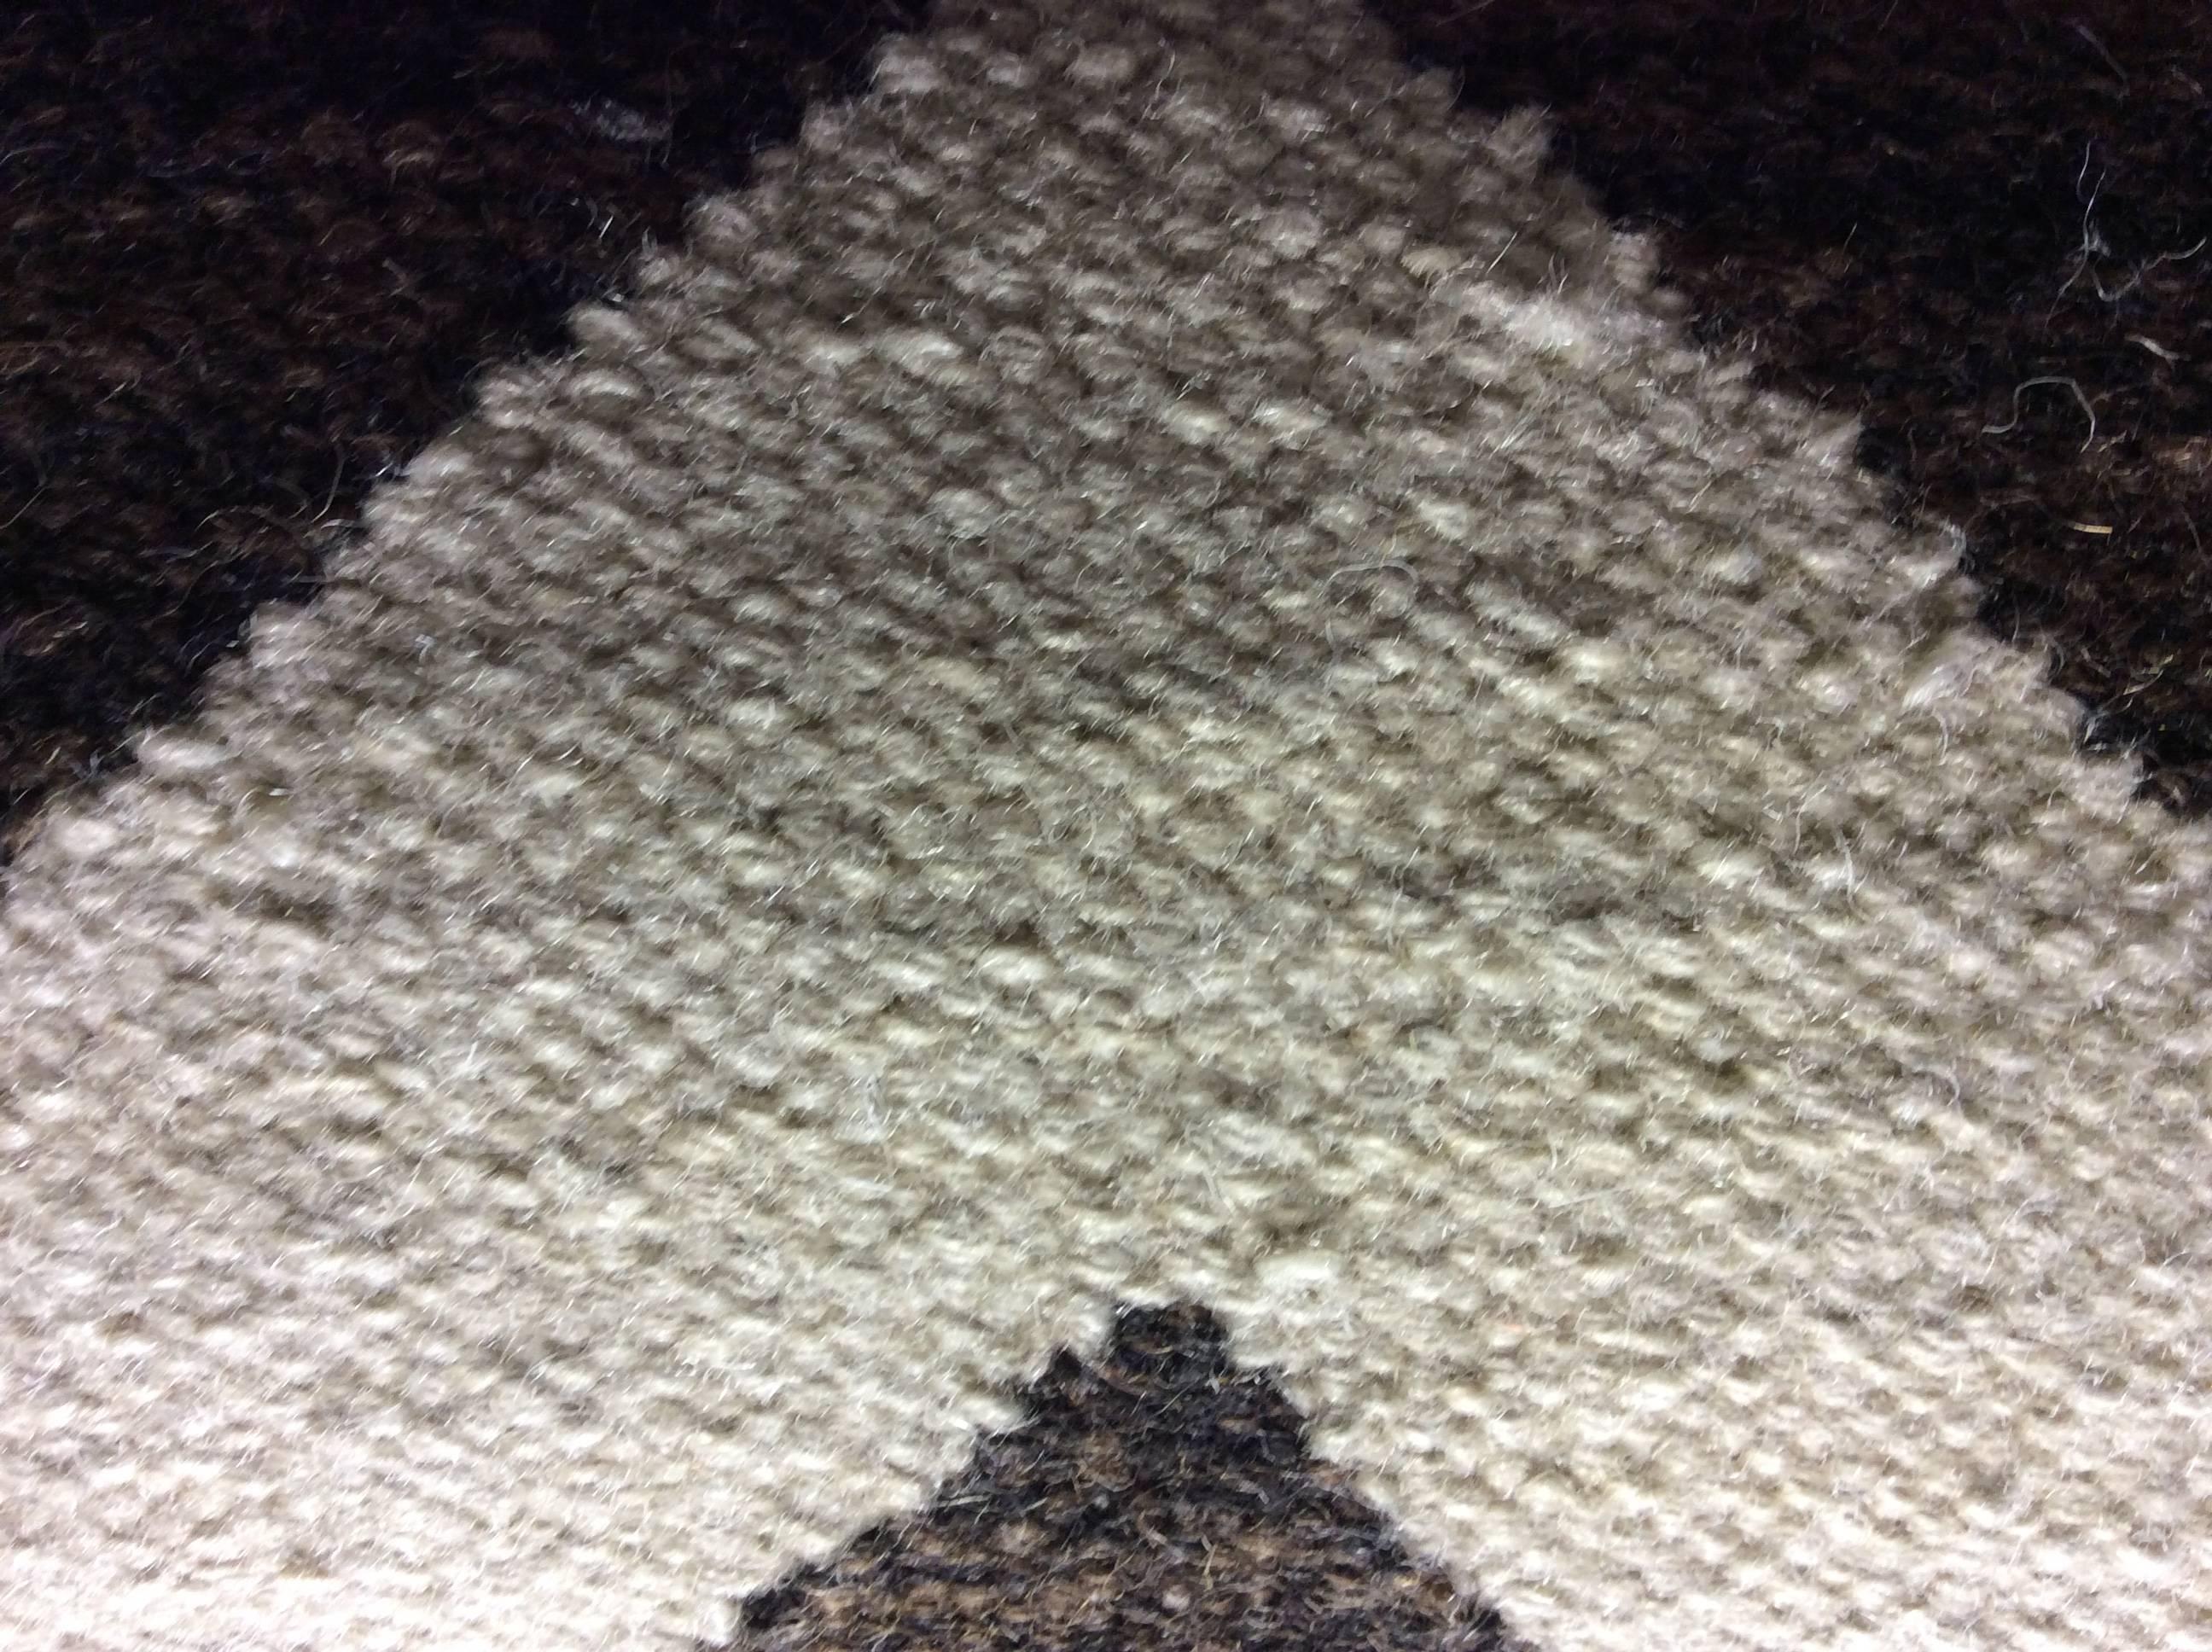 Brauner, weißer Wollteppich im Zick-Zack-Design von Doris Leslie Blau.
Größe: 7'8